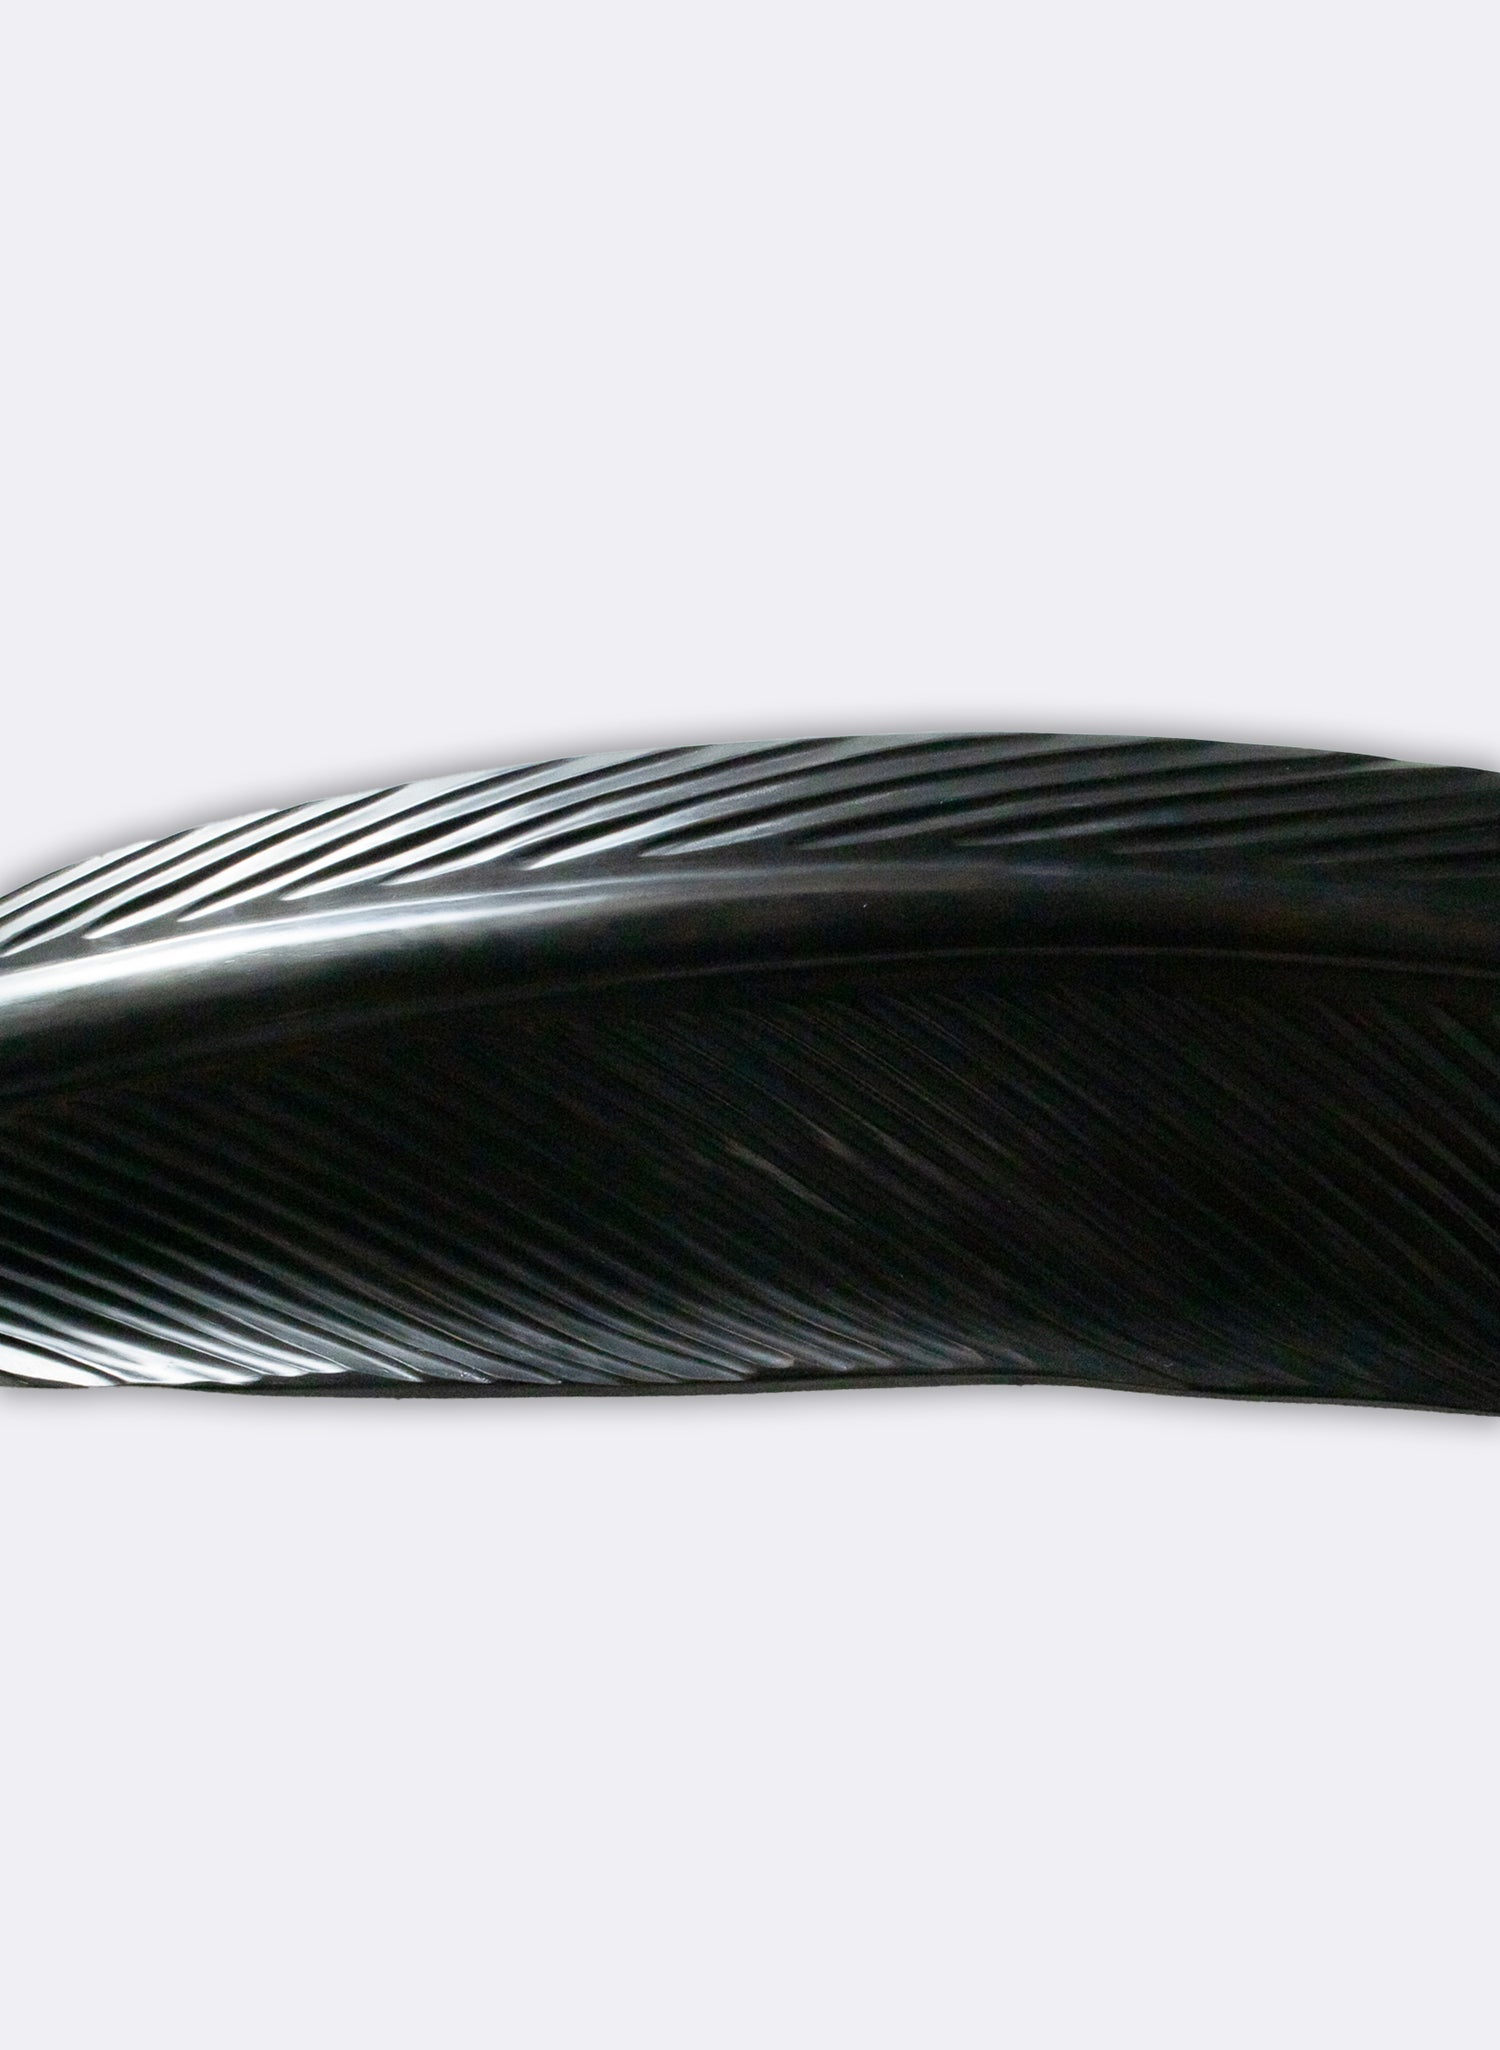 Tui Feather 1520mm - Black Swamp Kauri